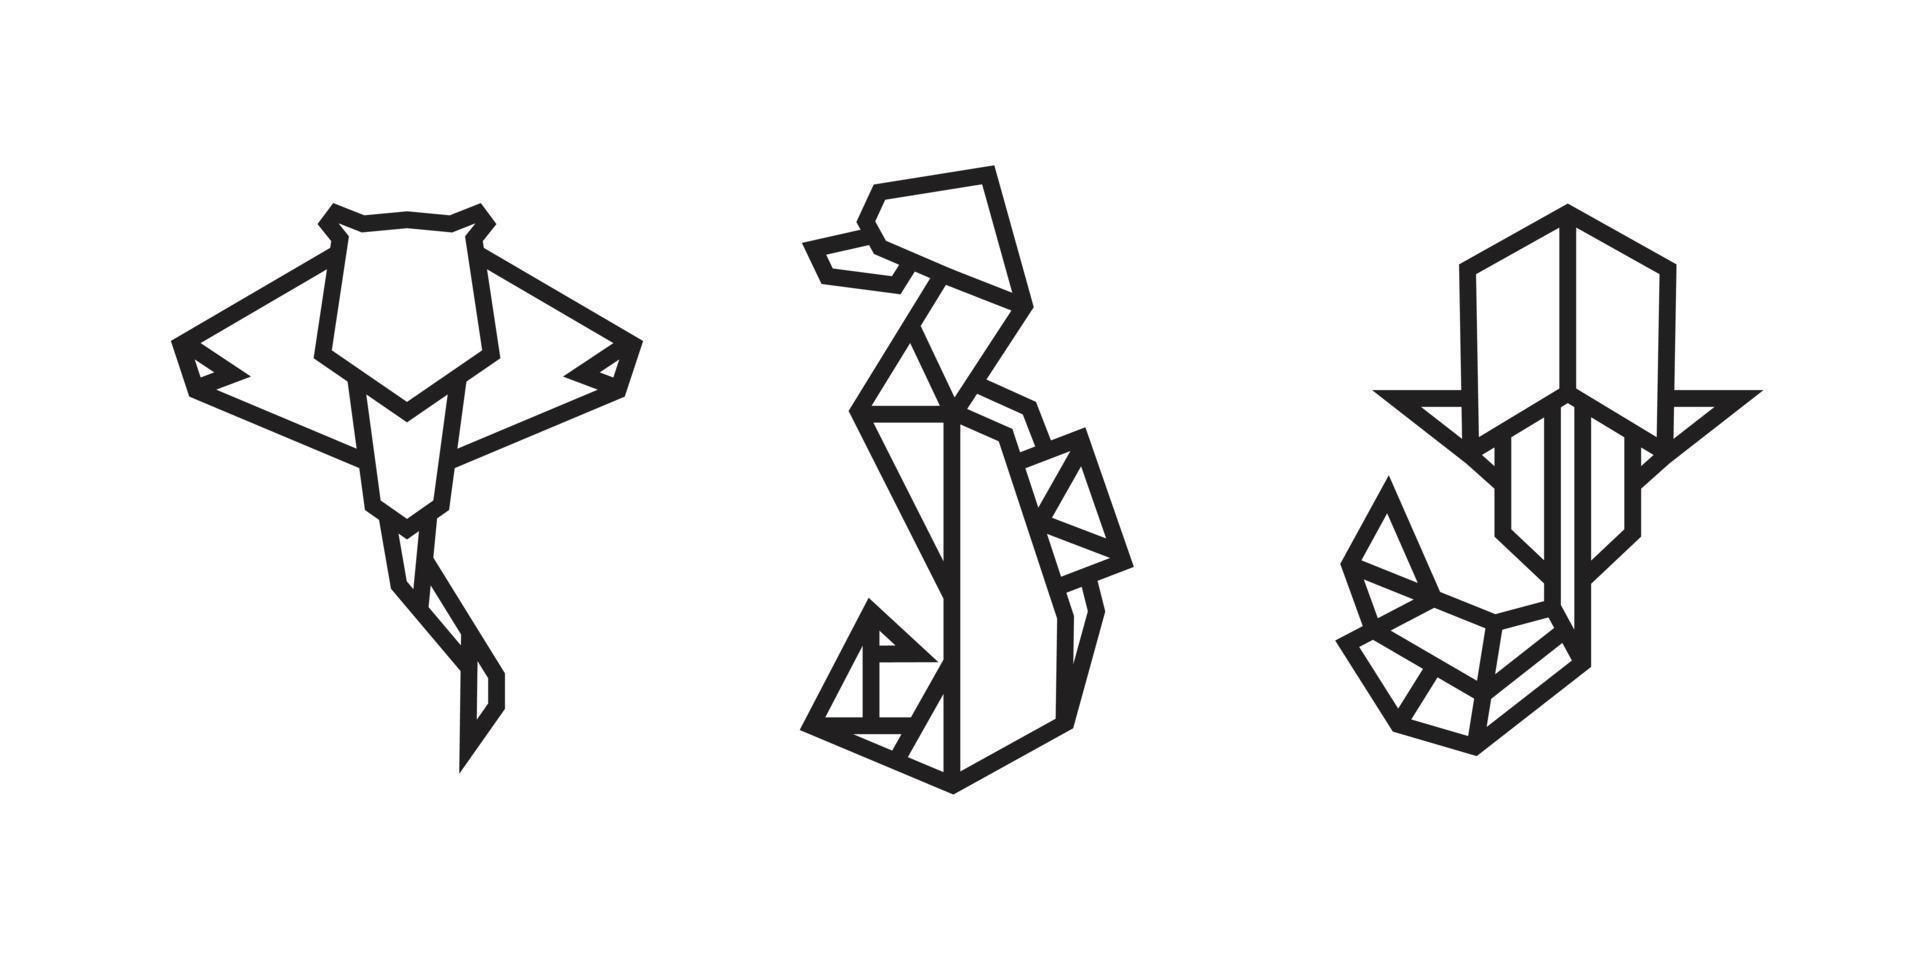 illustrazioni di pesce in stile origami vettore